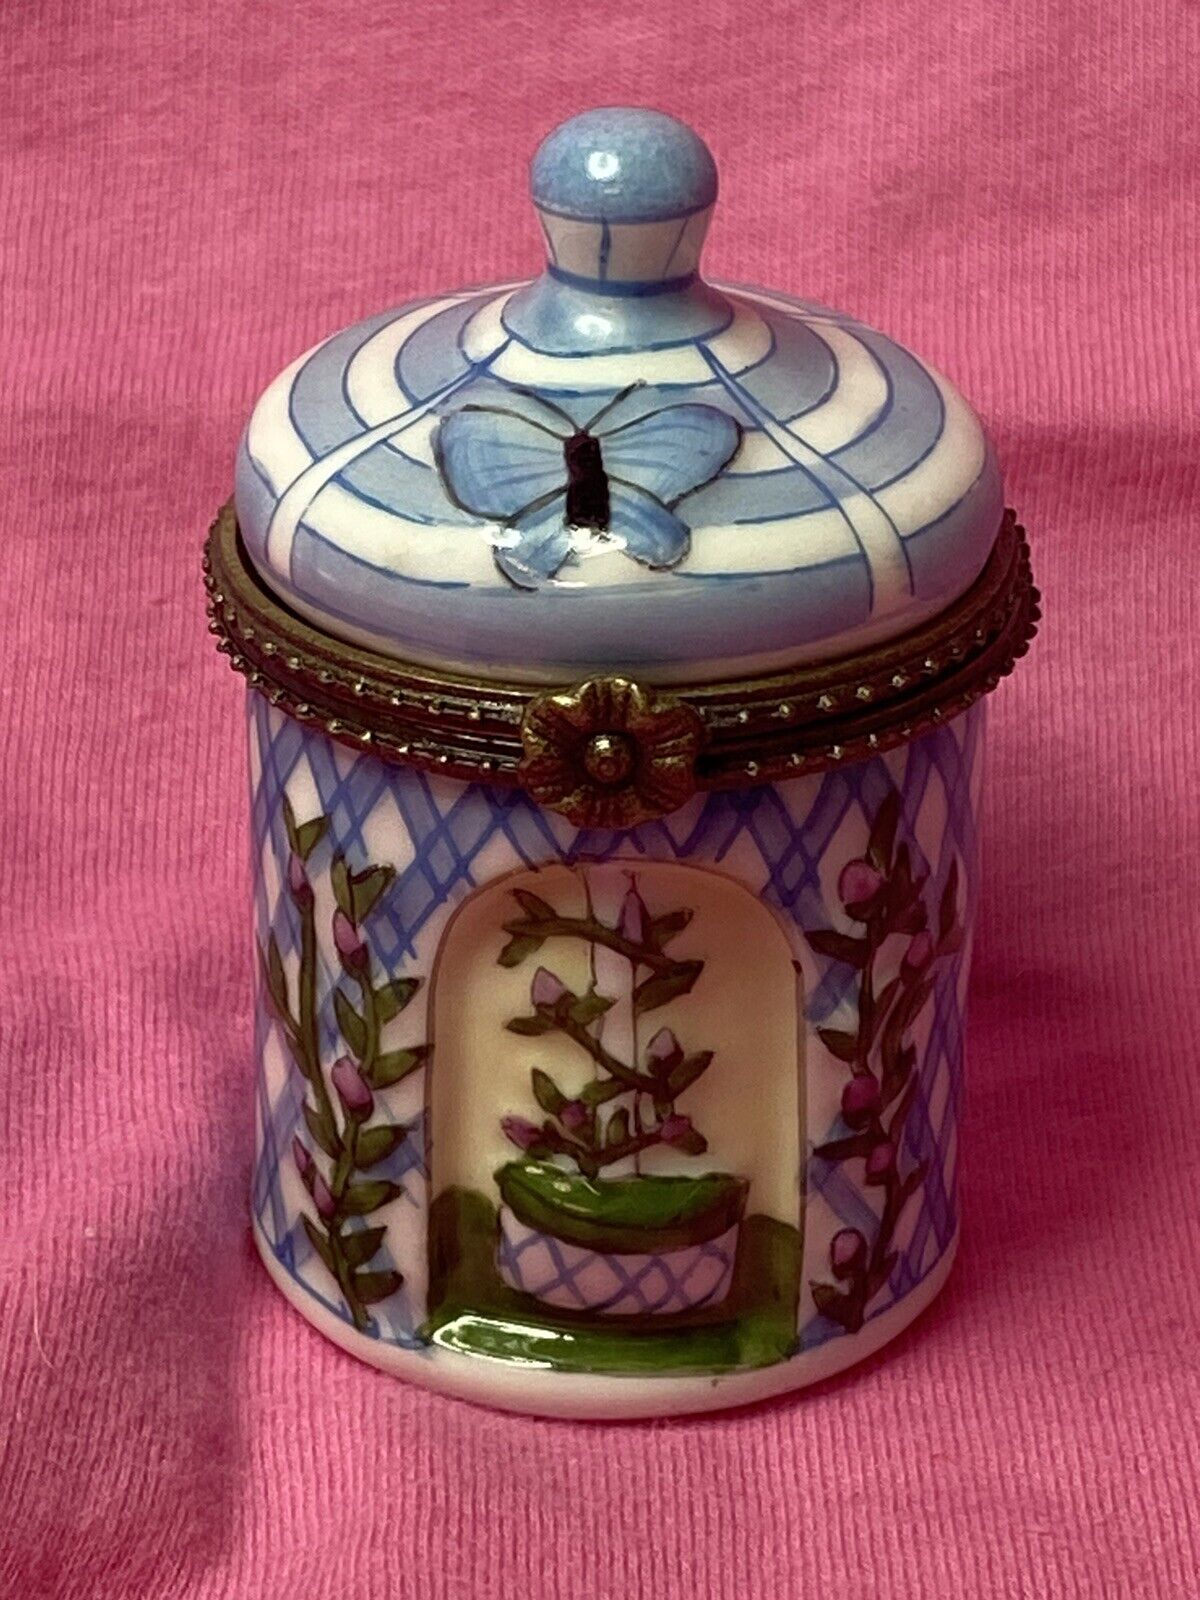 Beautiful Garden/Flower Themed Enamel Limoges Style Trinket Box